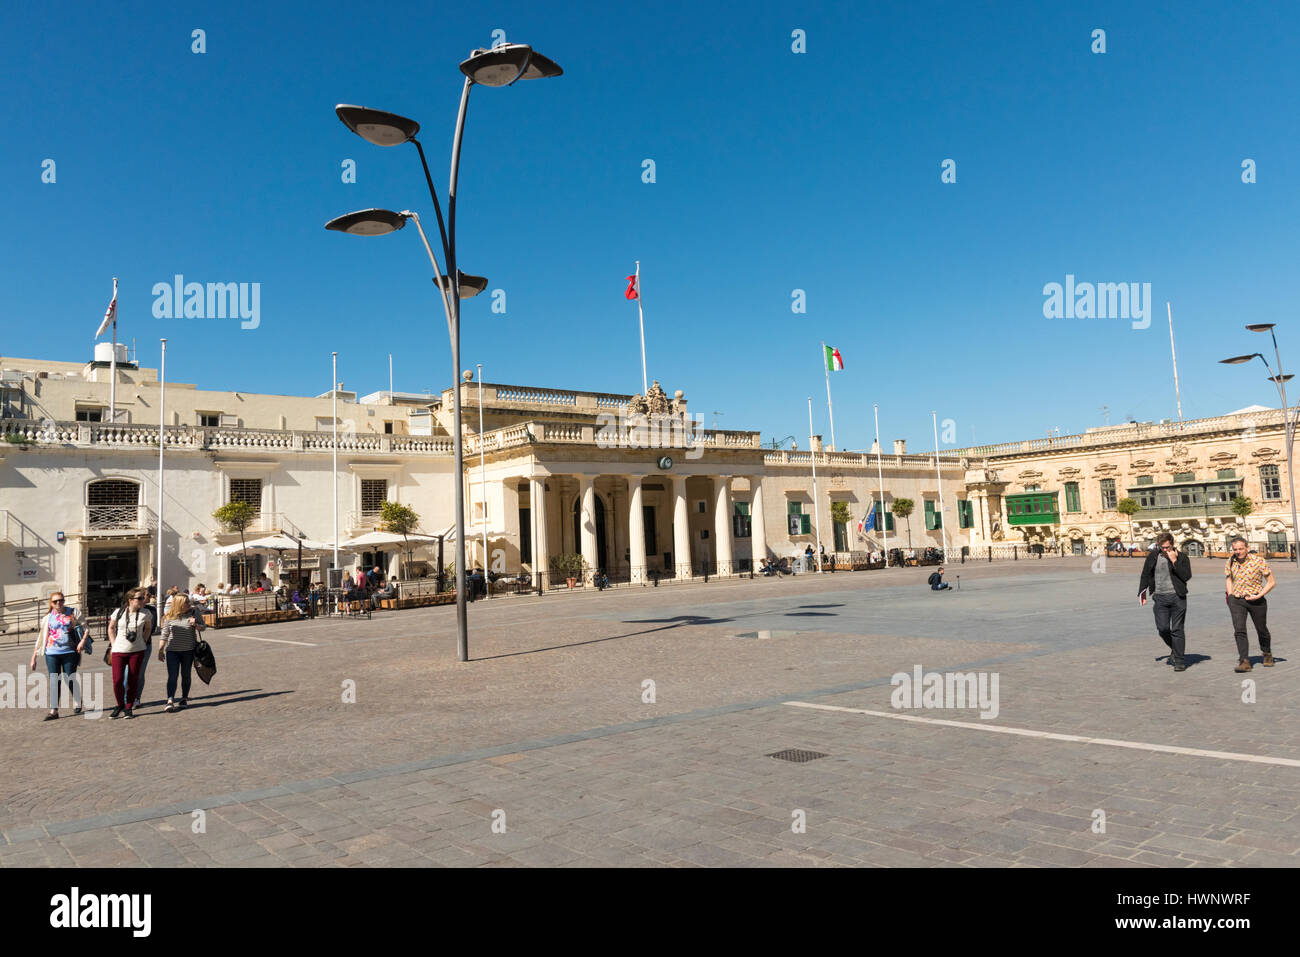 The main town square in Valetta Malta Stock Photo